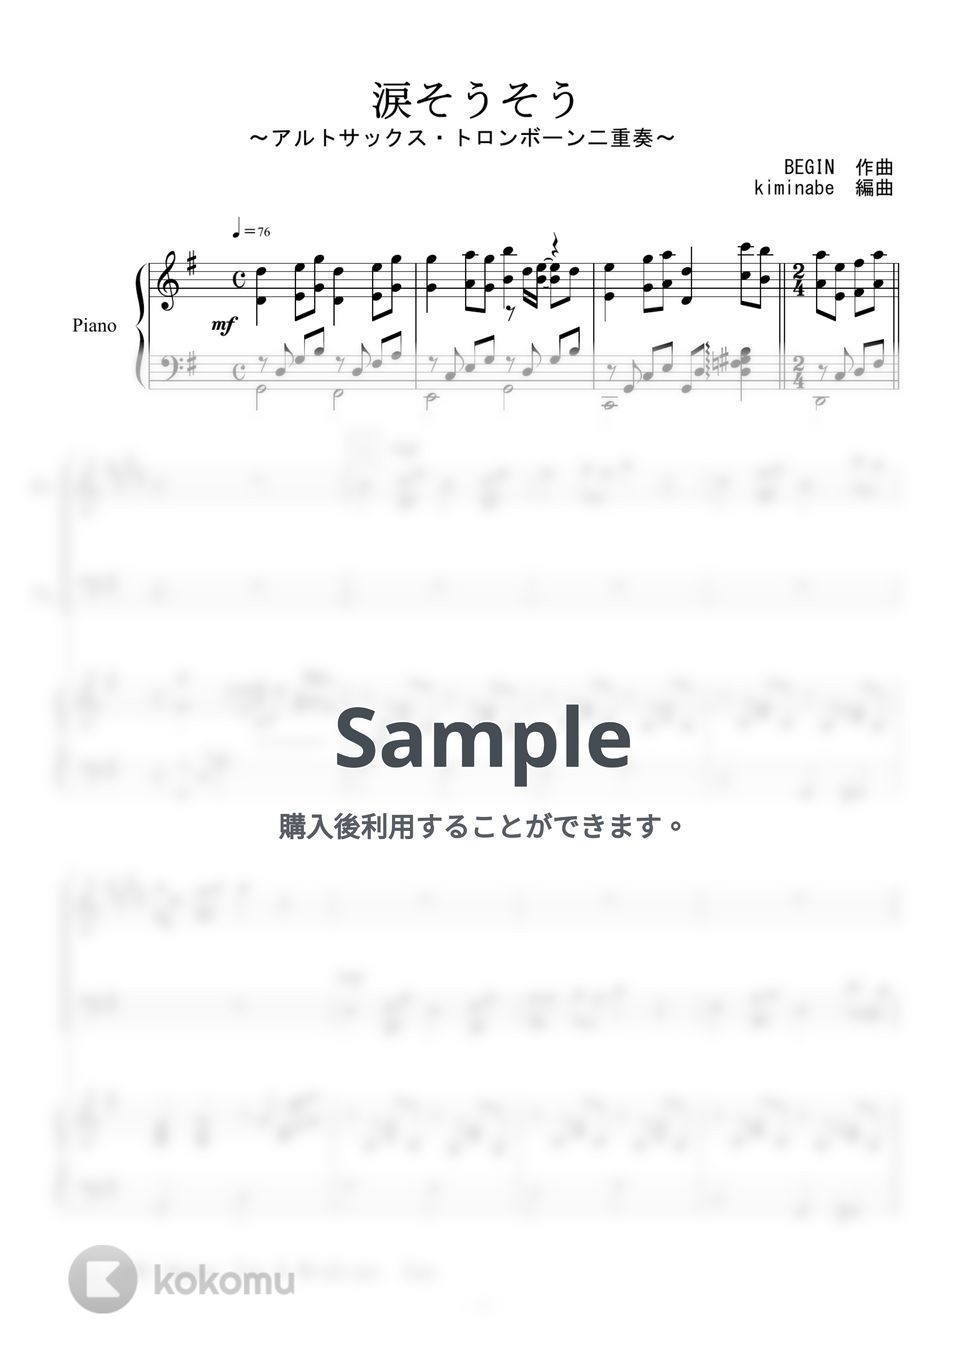 森山良子 - 涙そうそう (アルトサックス・トロンボーン二重奏) by kiminabe